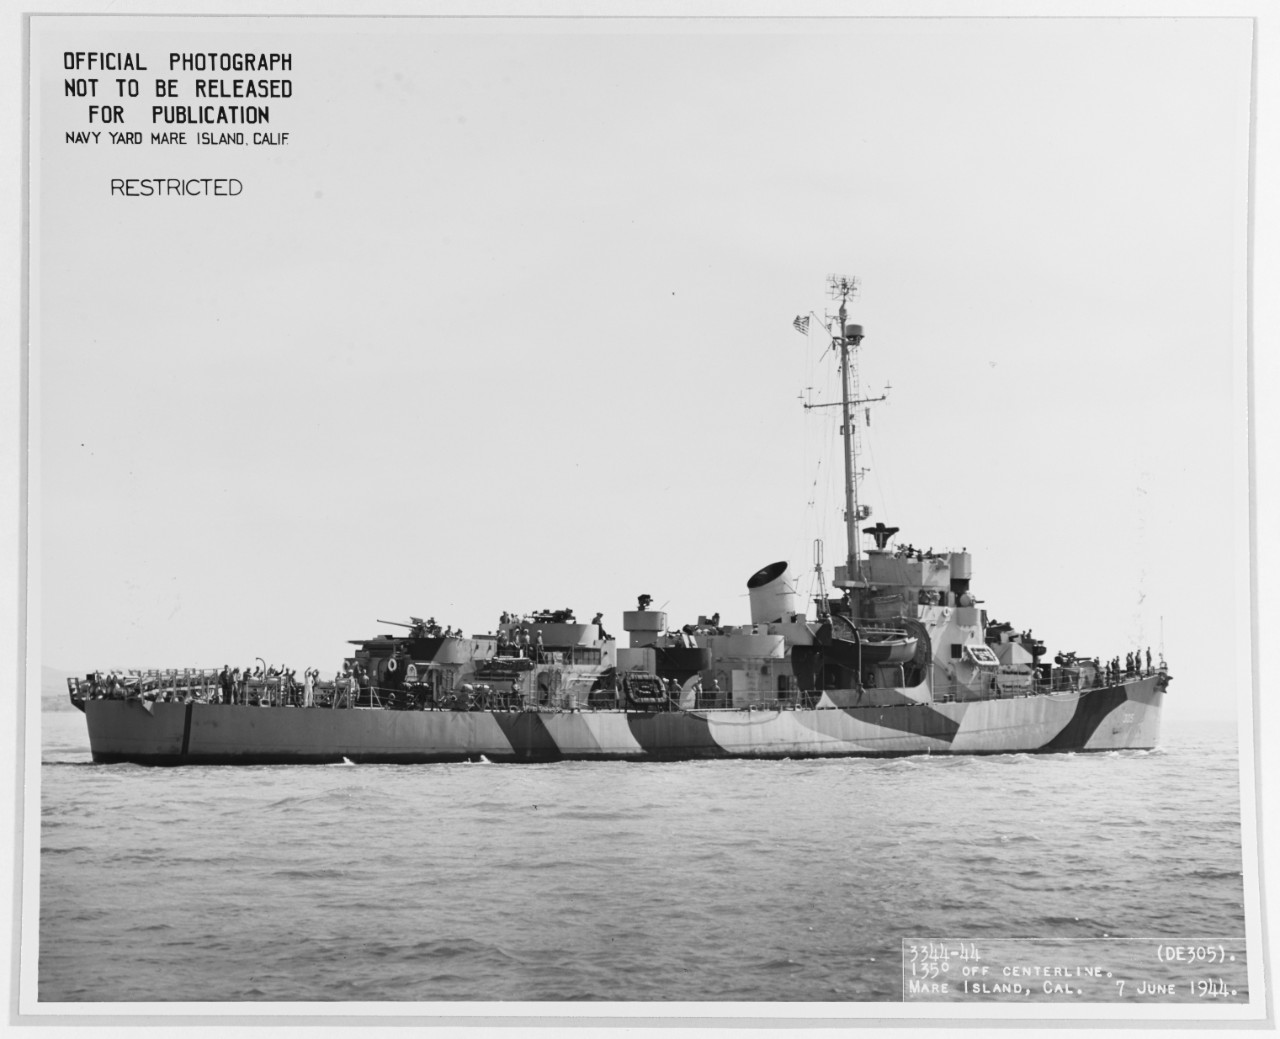 USS HALLORAN (DE-305)